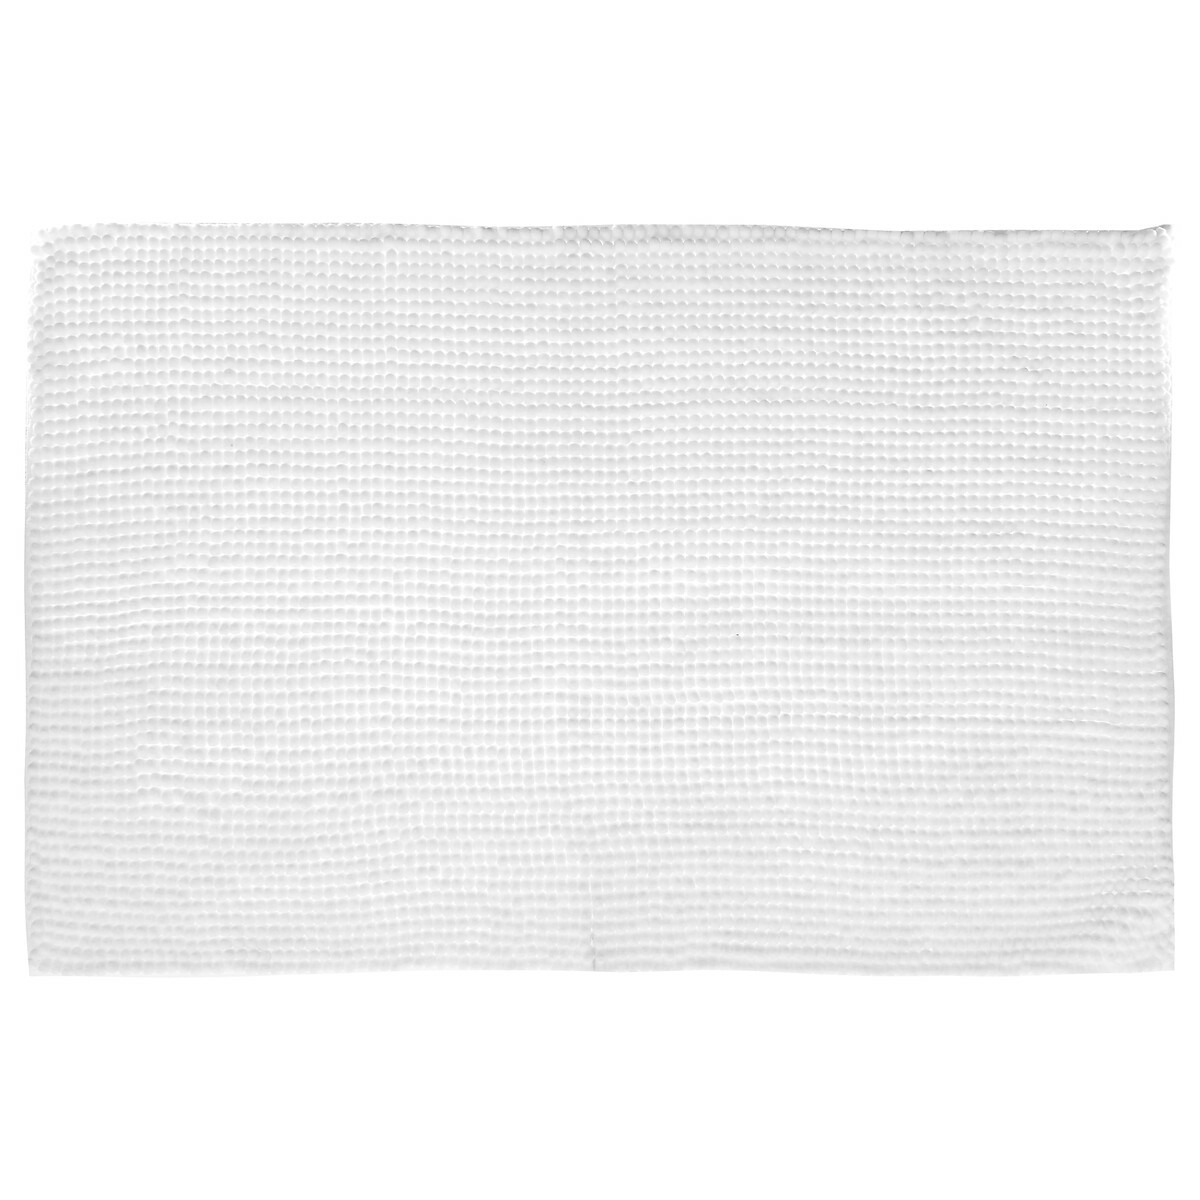 Badkamerkleedje-badmat voor op de vloer wit 50 x 80 cm